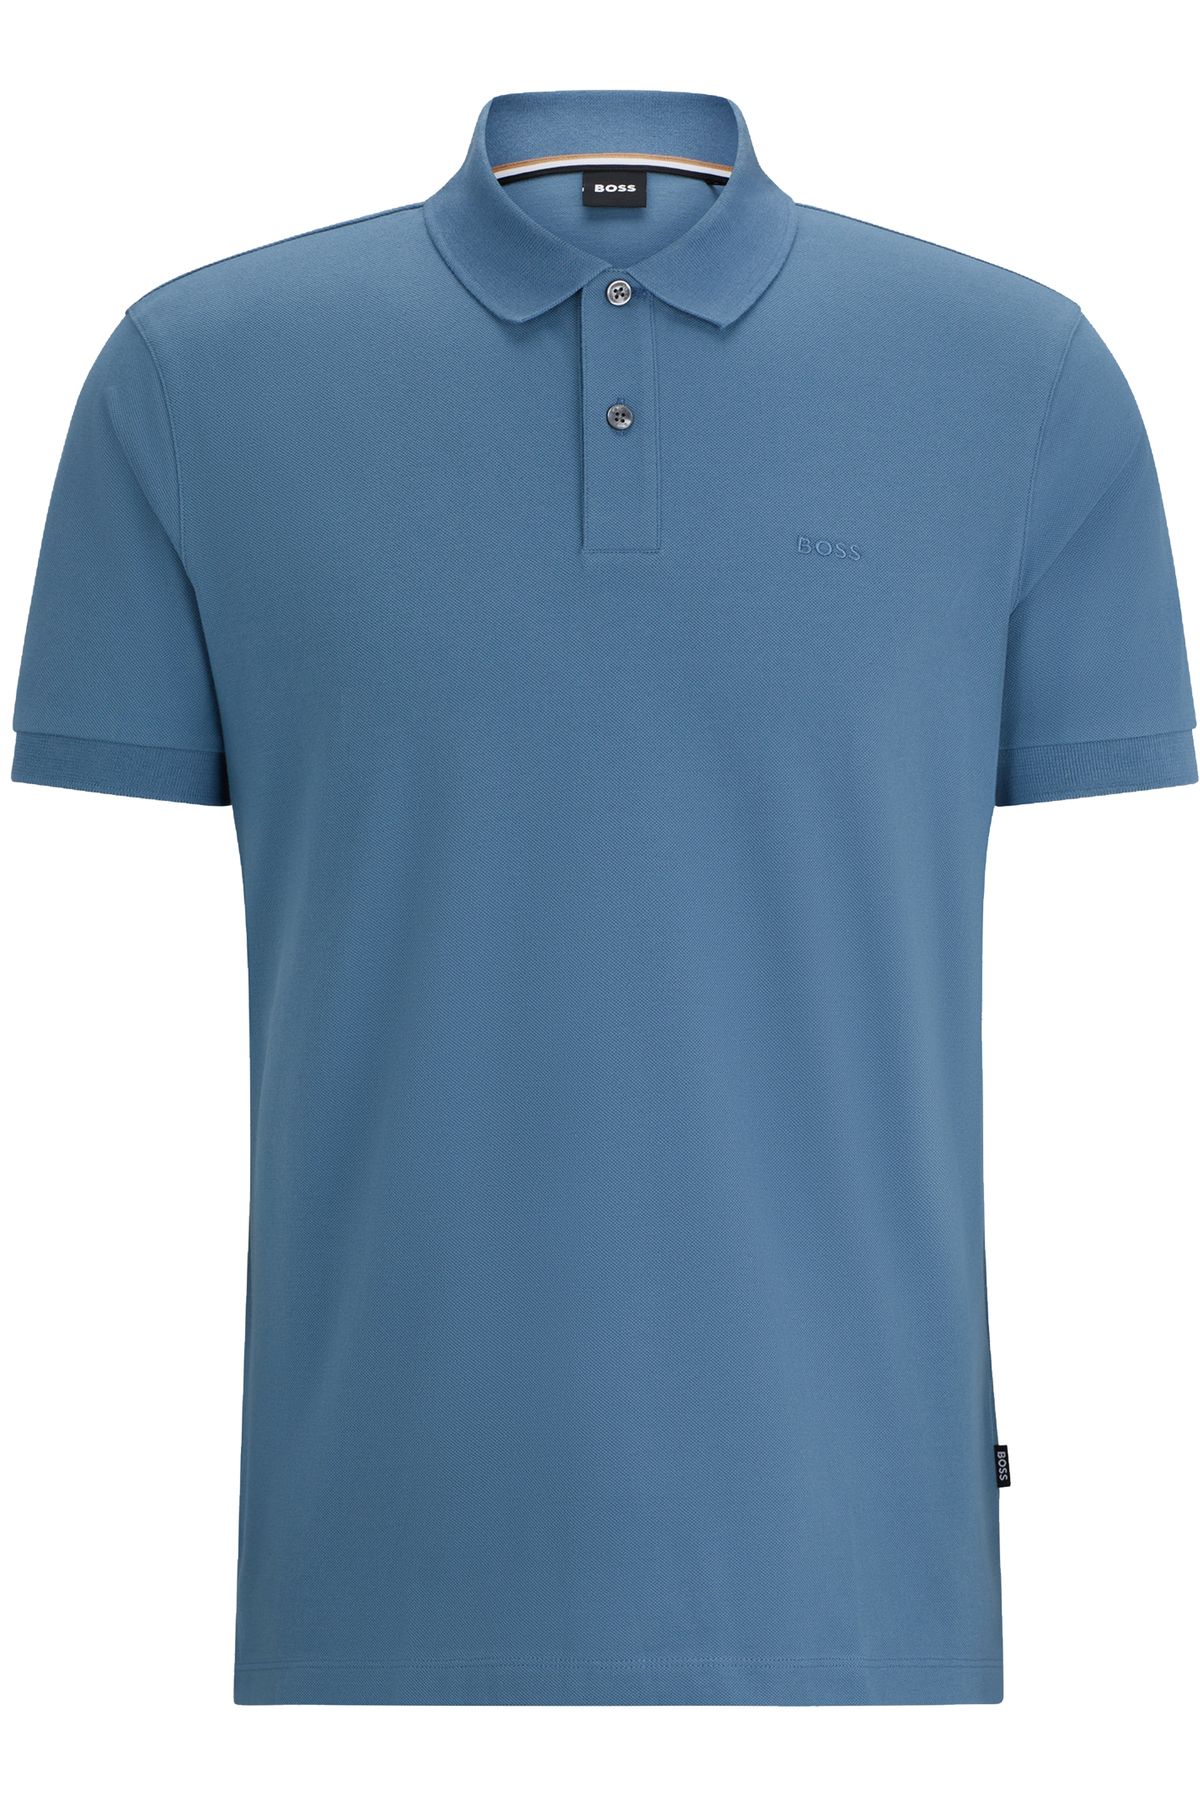 BOSS Erkek Pamuklu Polo Yakalı Düğme Kapamalı Kısa Kollu Açık Mavi1 Polo Yaka T-Shirt 50468301-459